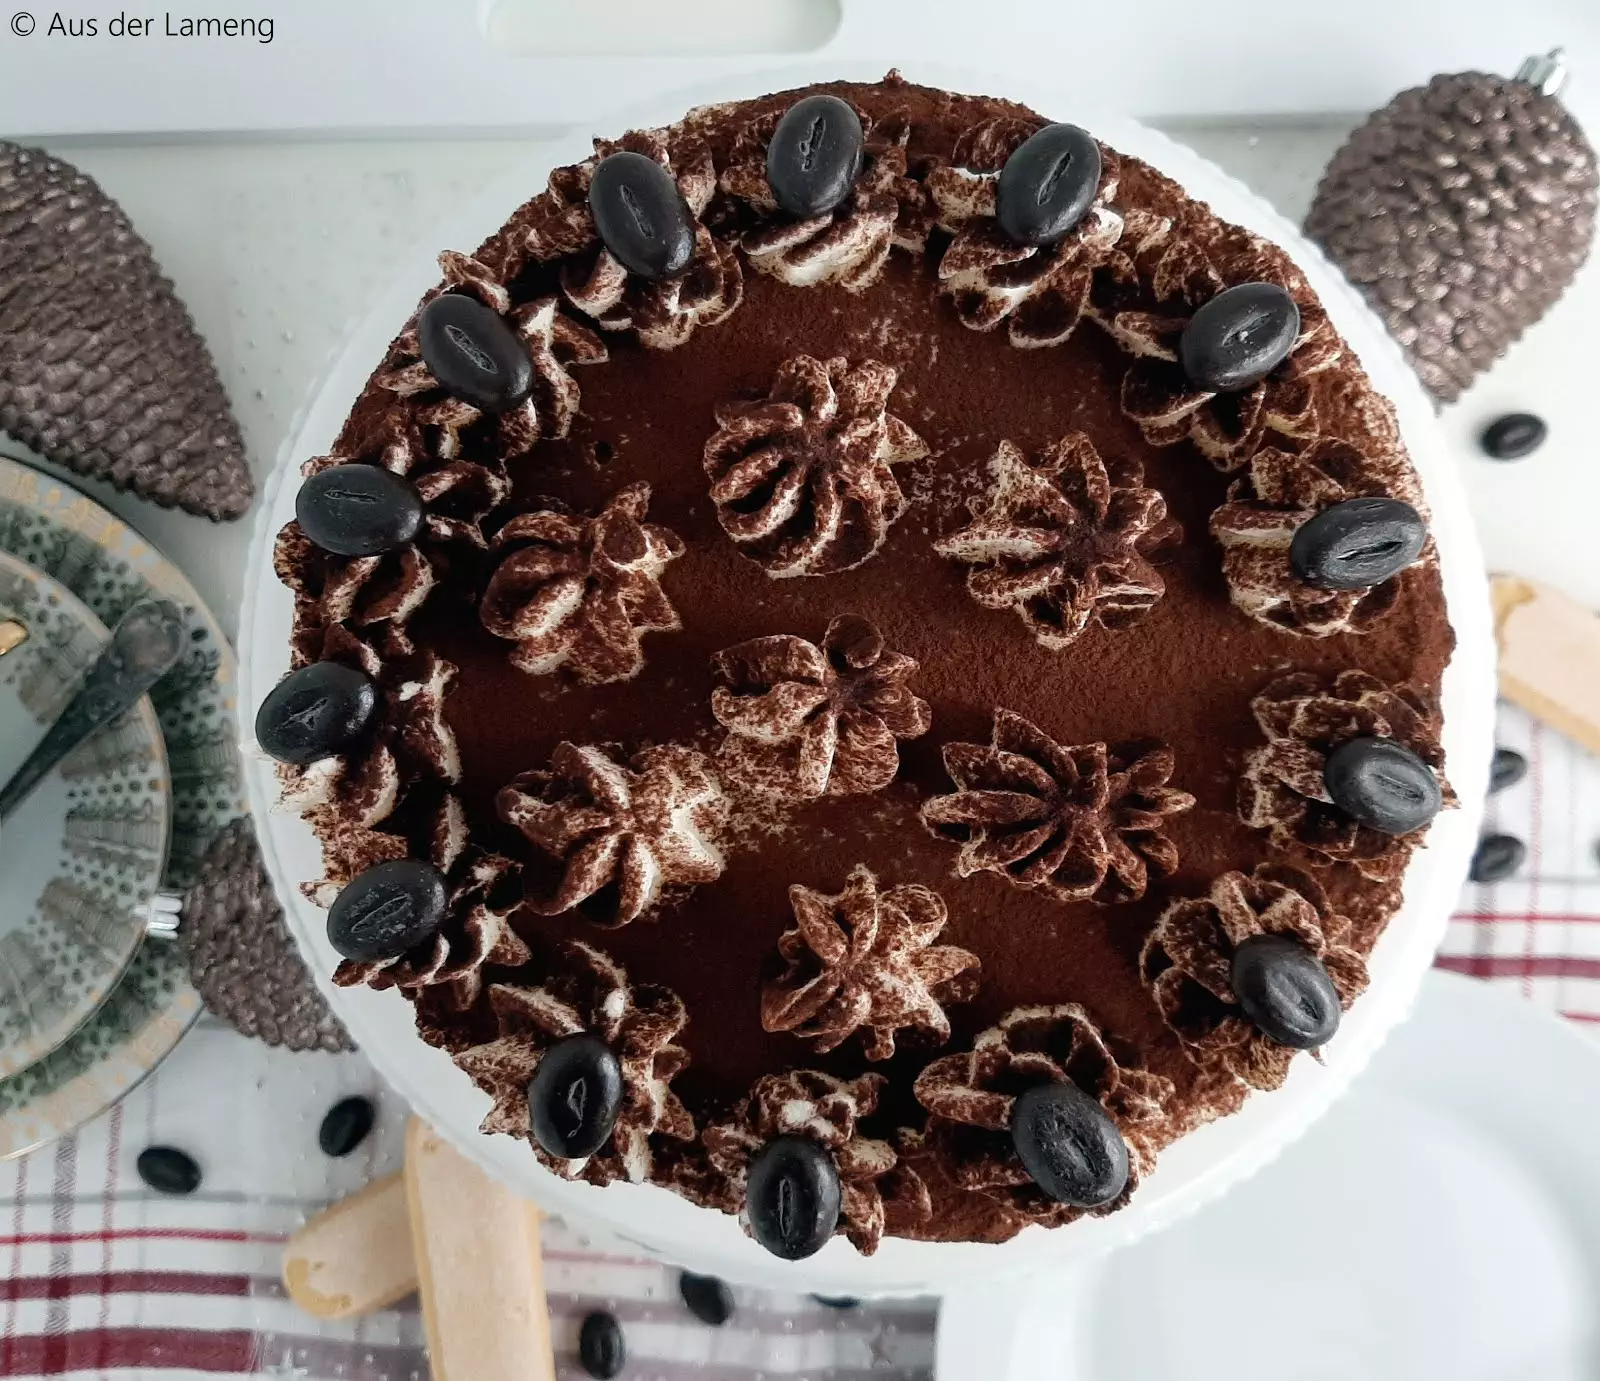 Weihnachtliche Tiramisu-Torte - Rezept von Aus der Lameng | SCCC 2019: Türchen Nr. 20